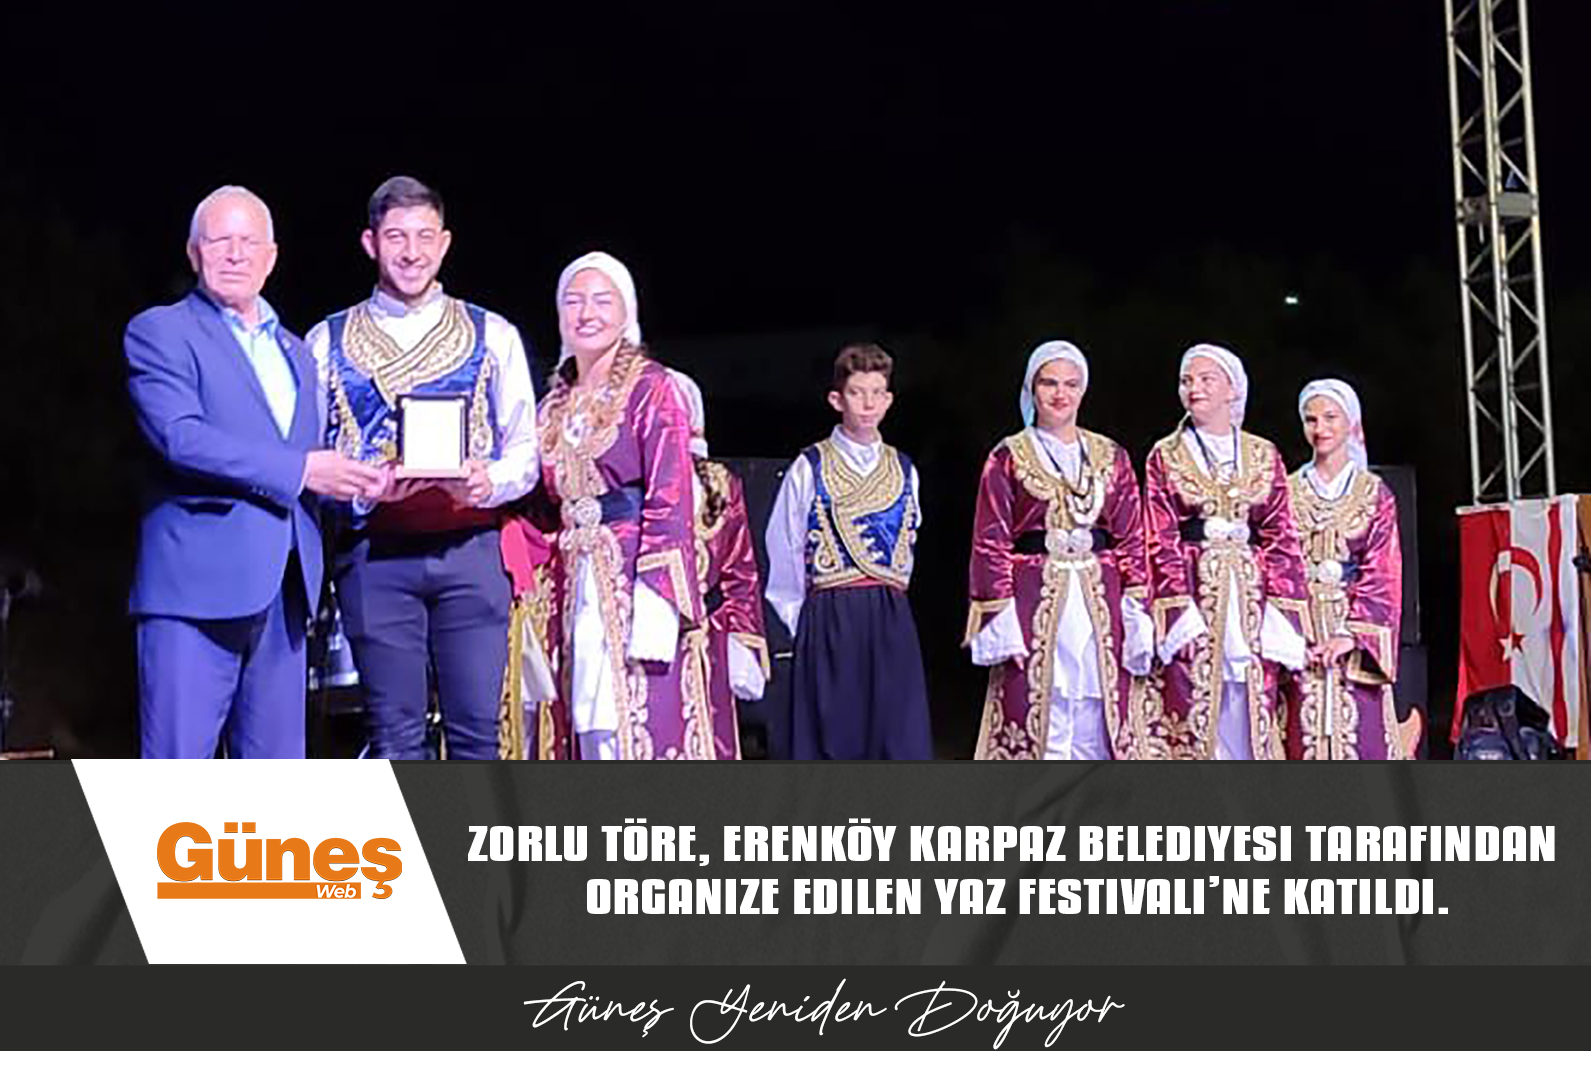 Cumhuriyet Meclisi Başkanı Zorlu Töre, Erenköy Karpaz Belediyesi tarafından organize edilen Yaz Festivali’ne katıldı.